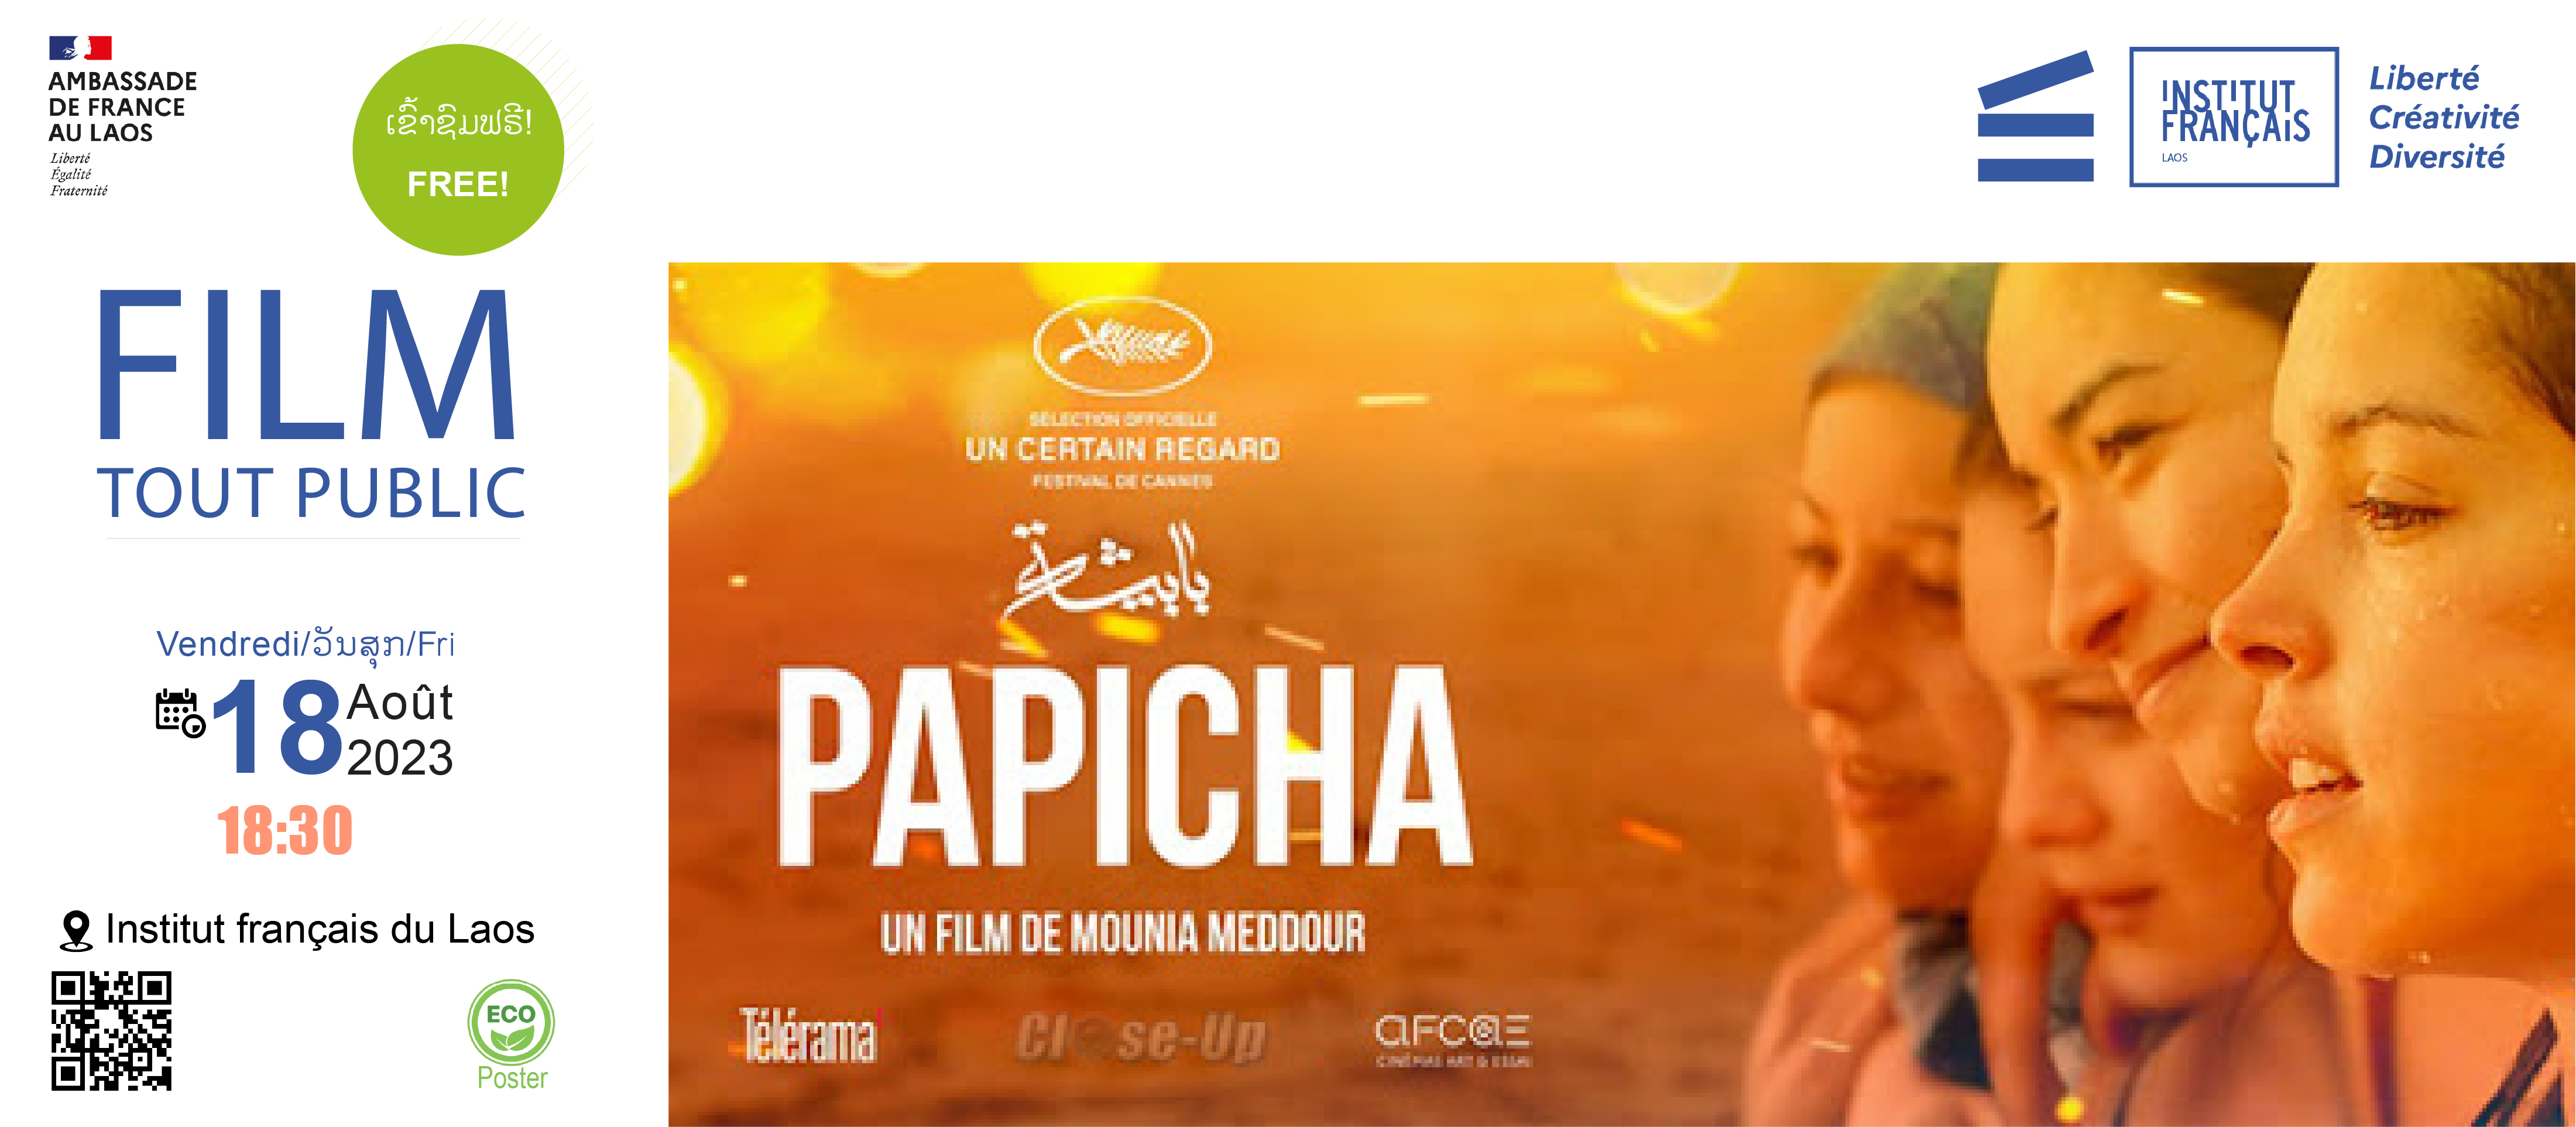 Cinema - Papicha